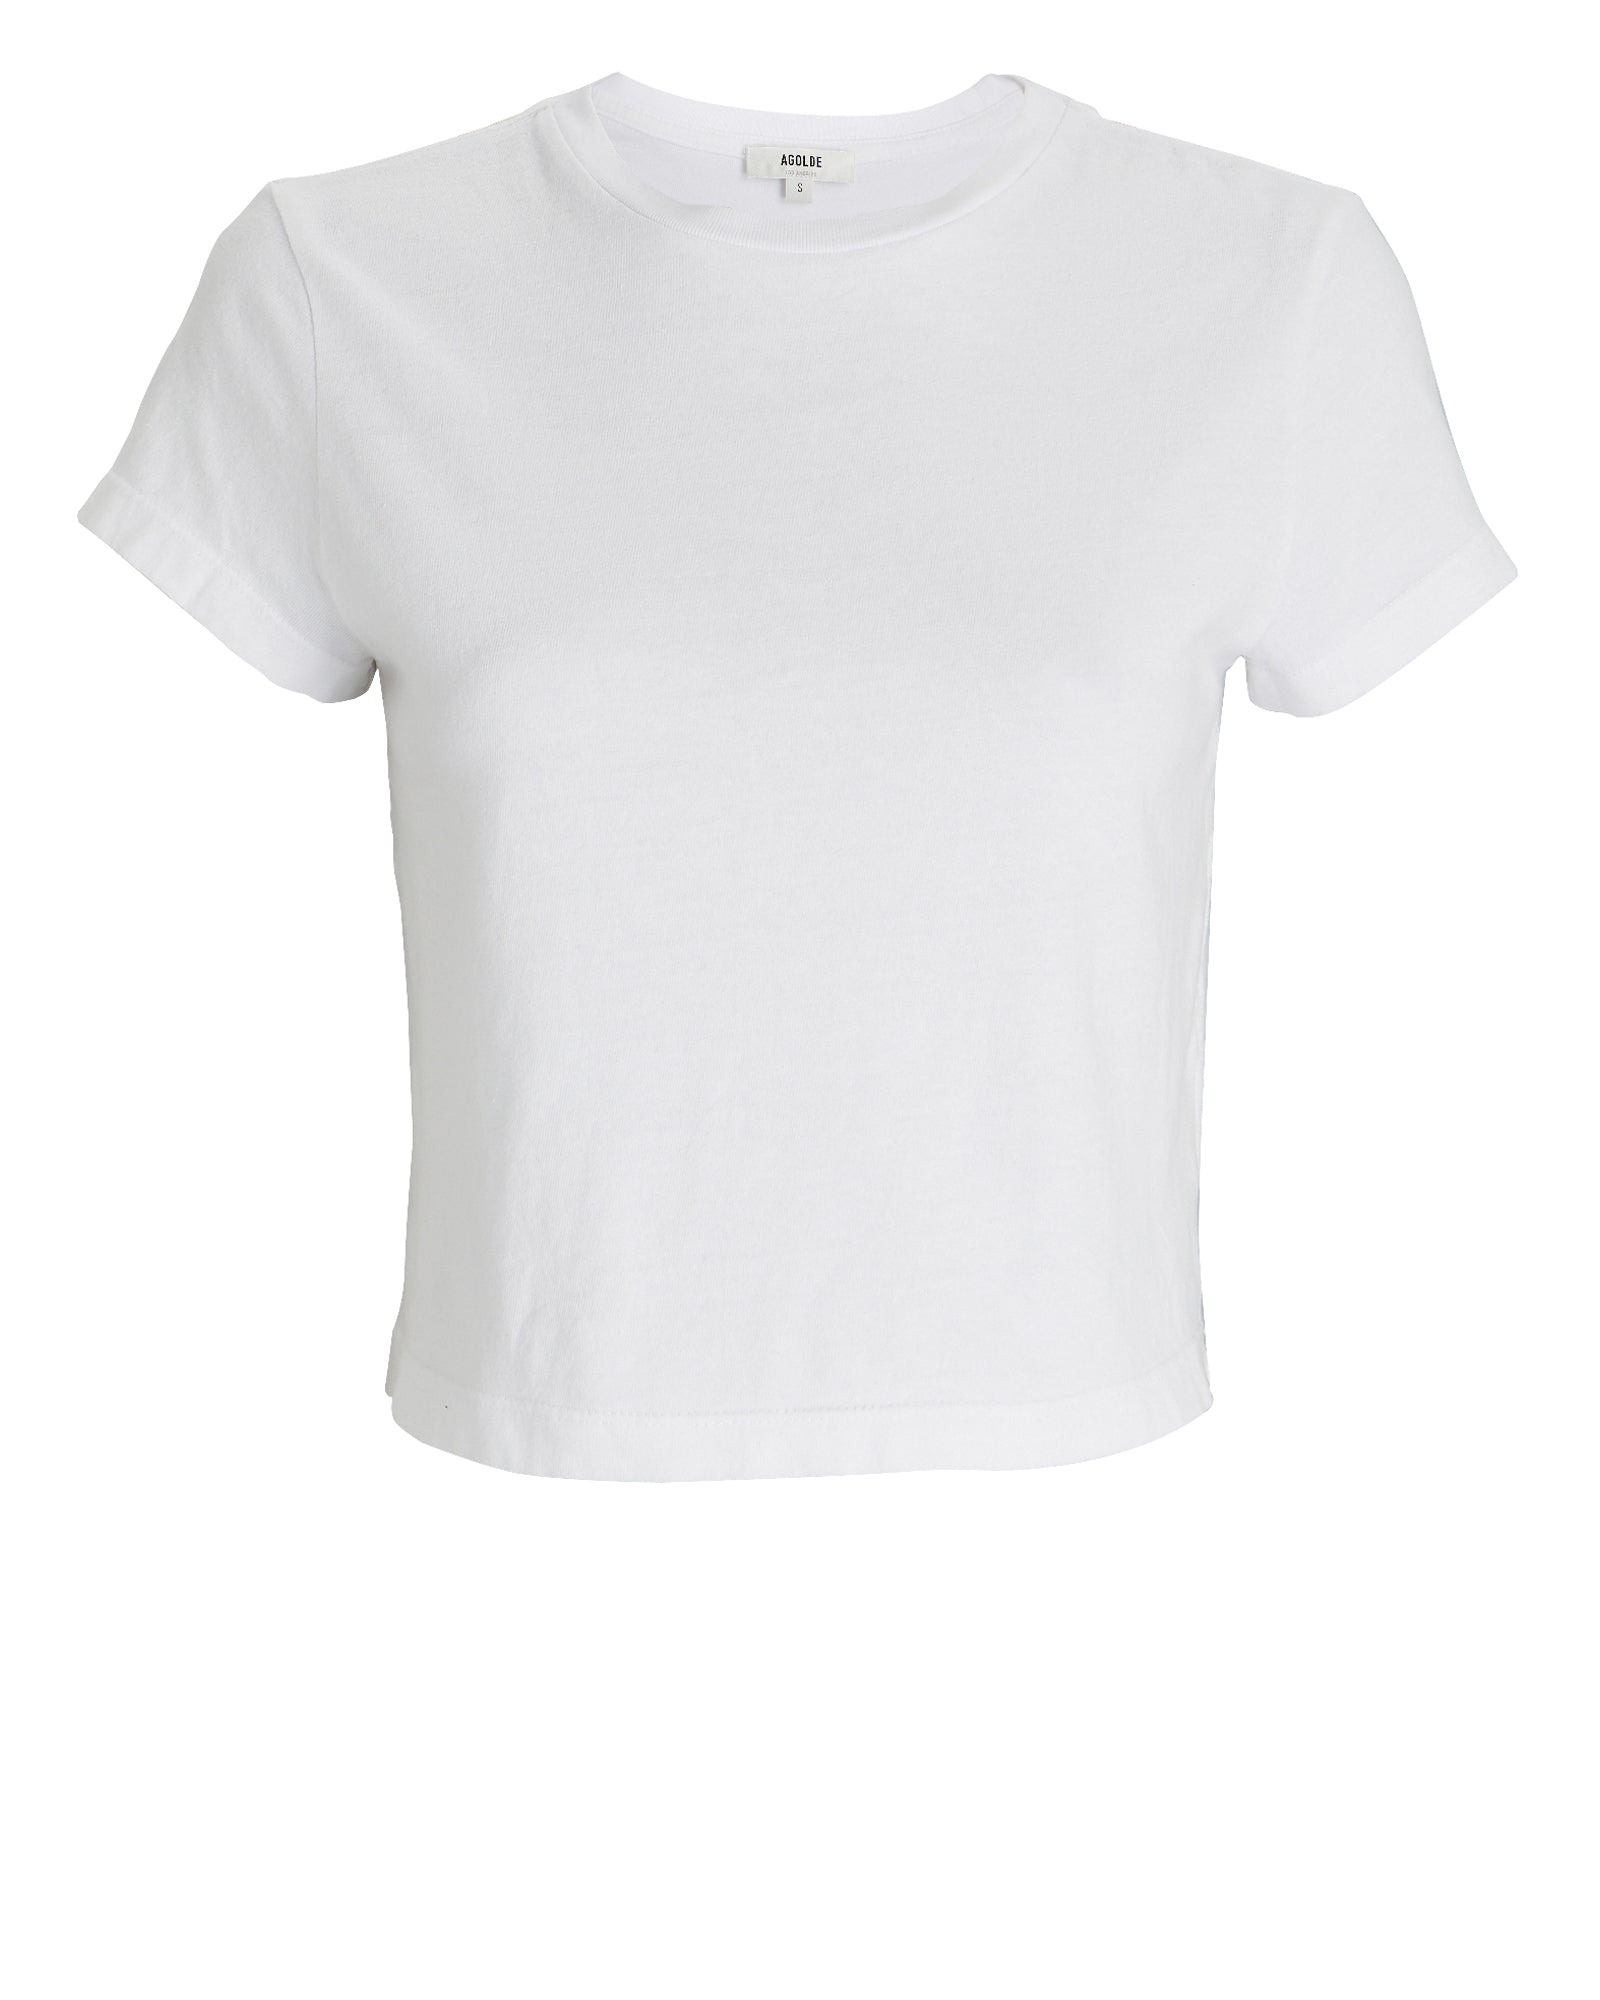 AGOLDE Agolde Adine Shrunken Cotton-Jersey T-Shirt